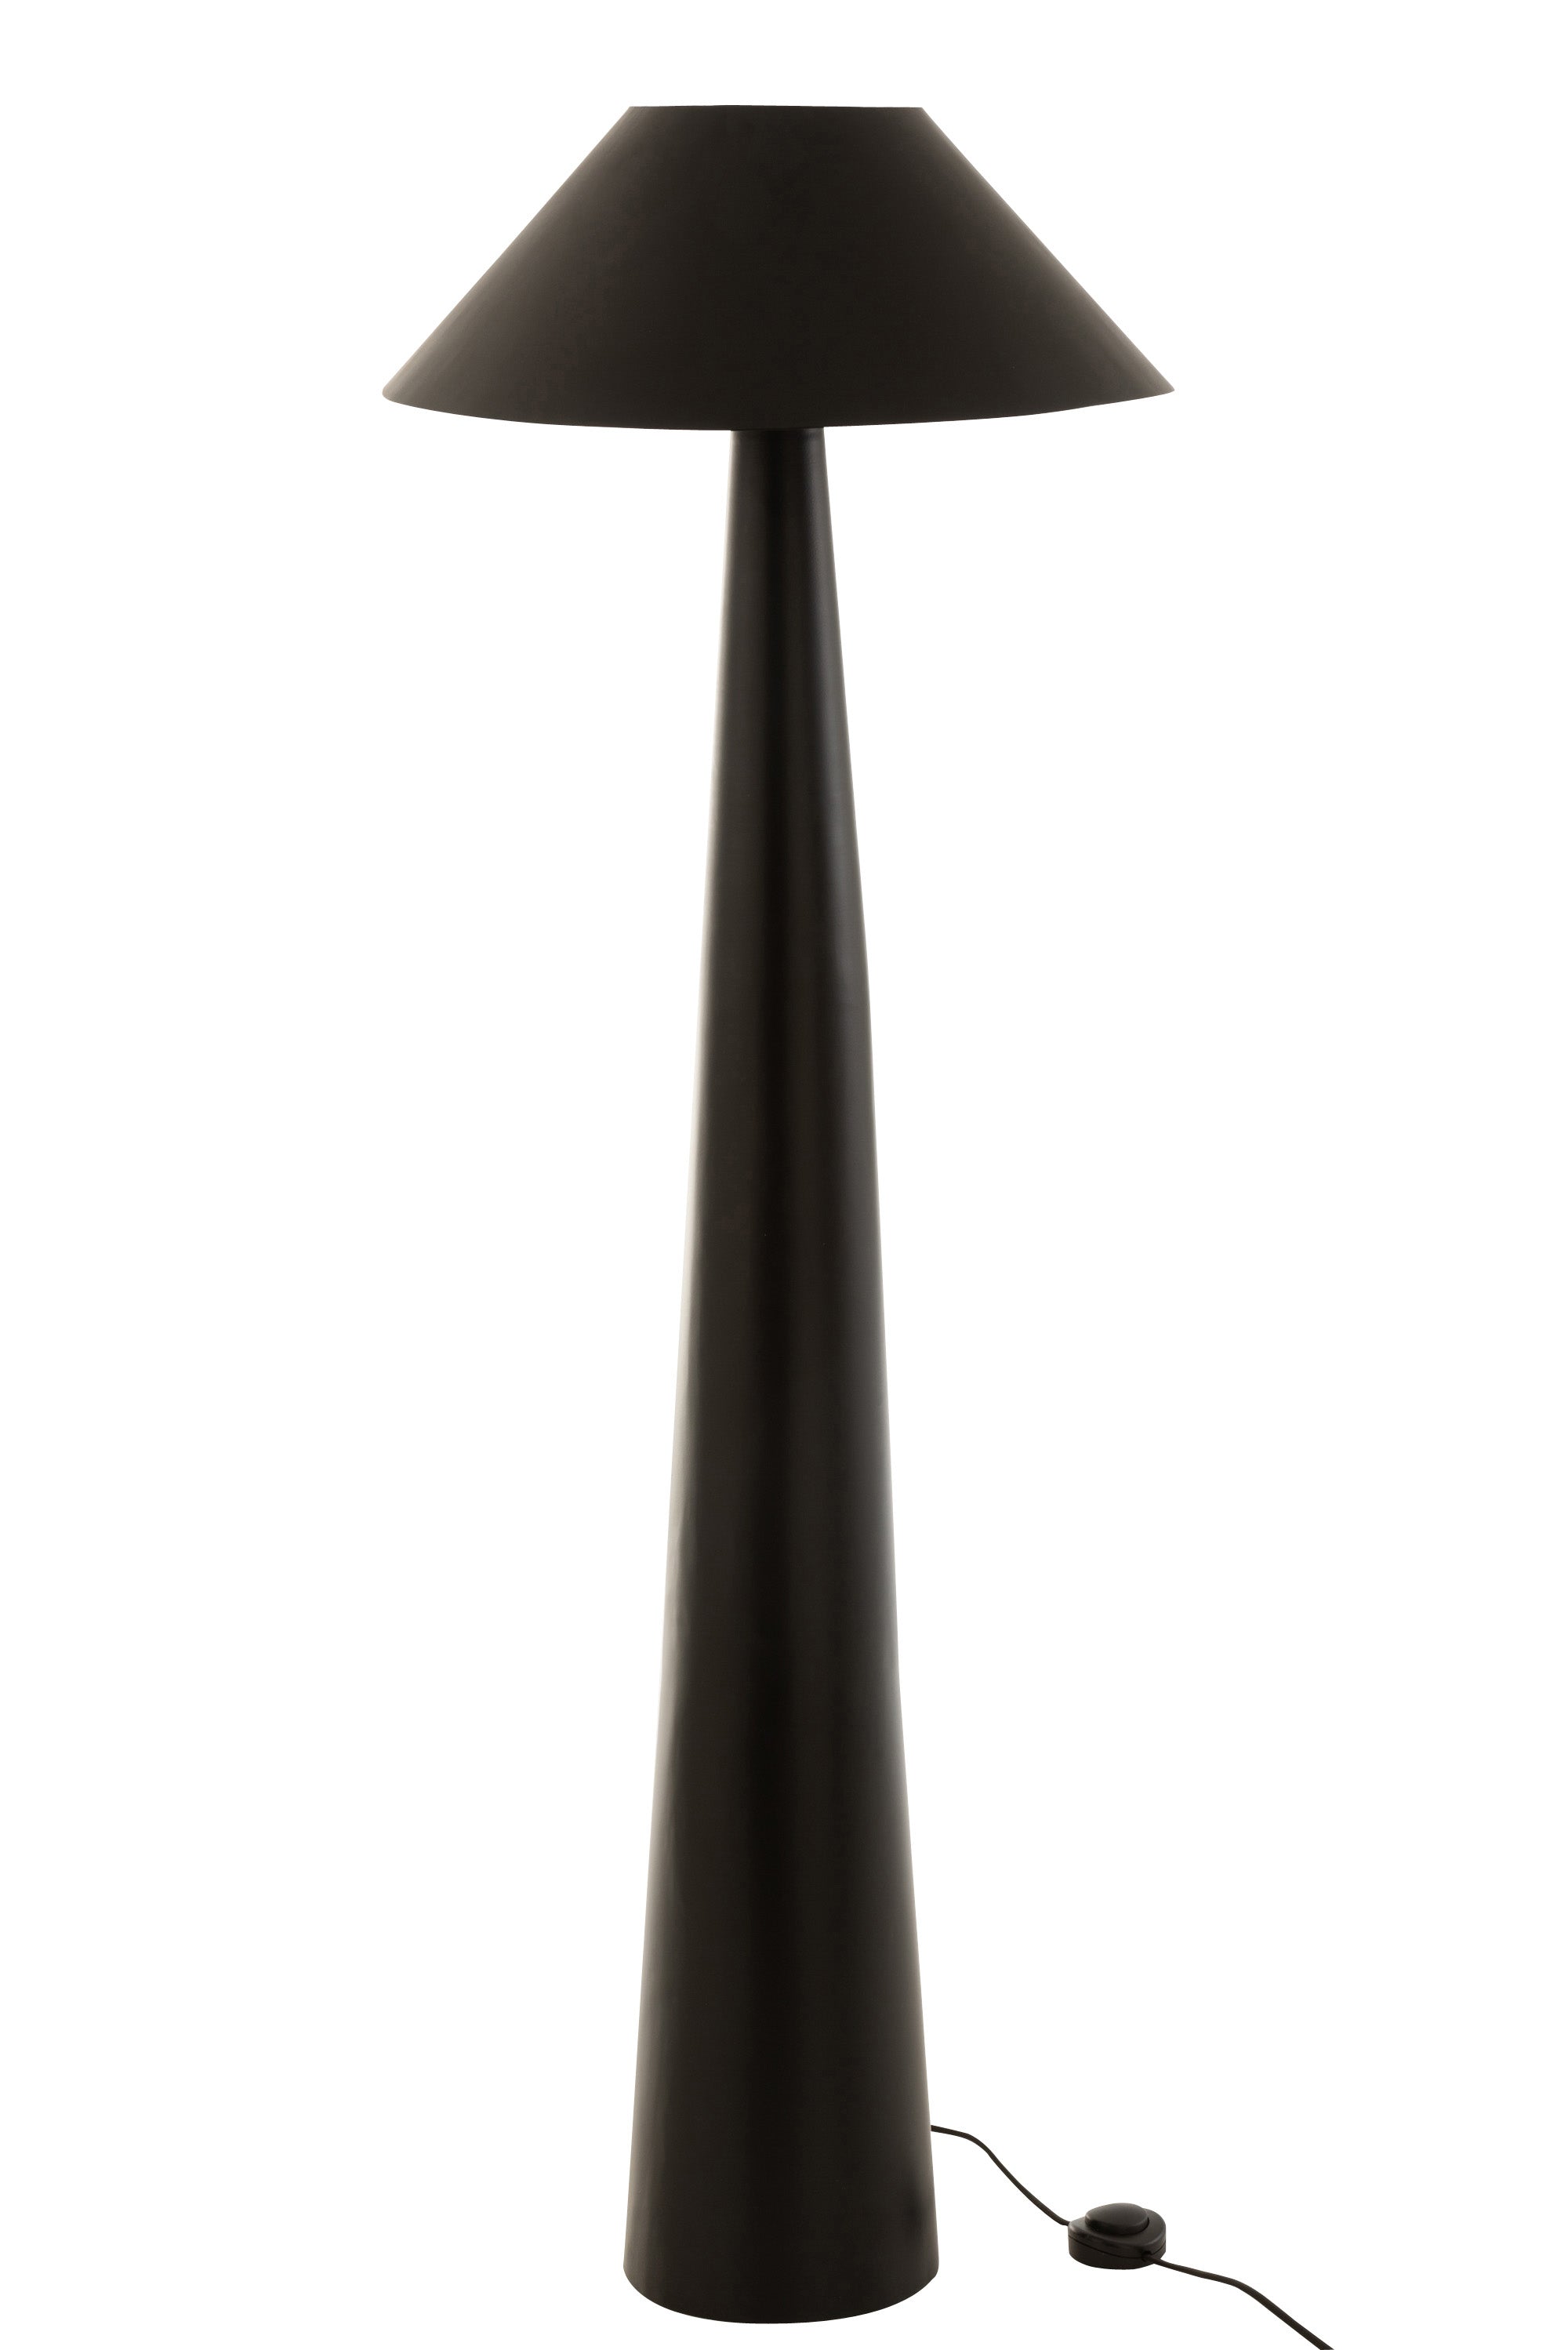 Stehlampe aus schwarzem Metall; auf einem konischen, oben spitz zulaufenden Lampensockel findet sich ein ausgestellter, runder Lampenschirm.